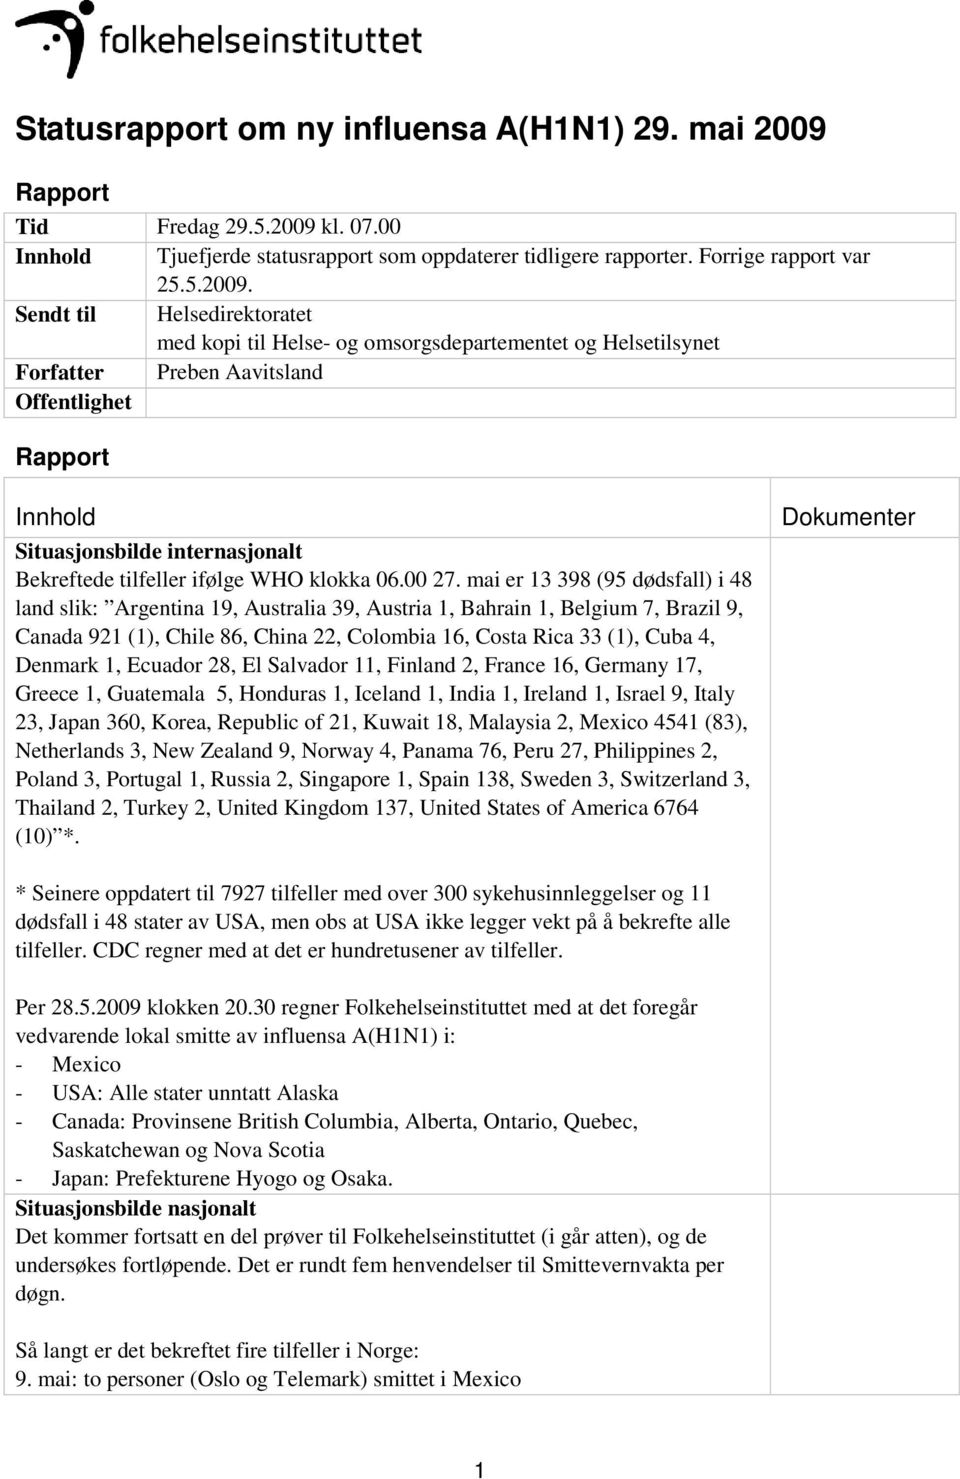 kl. 07.00 Innhold Tjuefjerde statusrapport som oppdaterer tidligere rapporter. Forrige rapport var 25.5.2009.